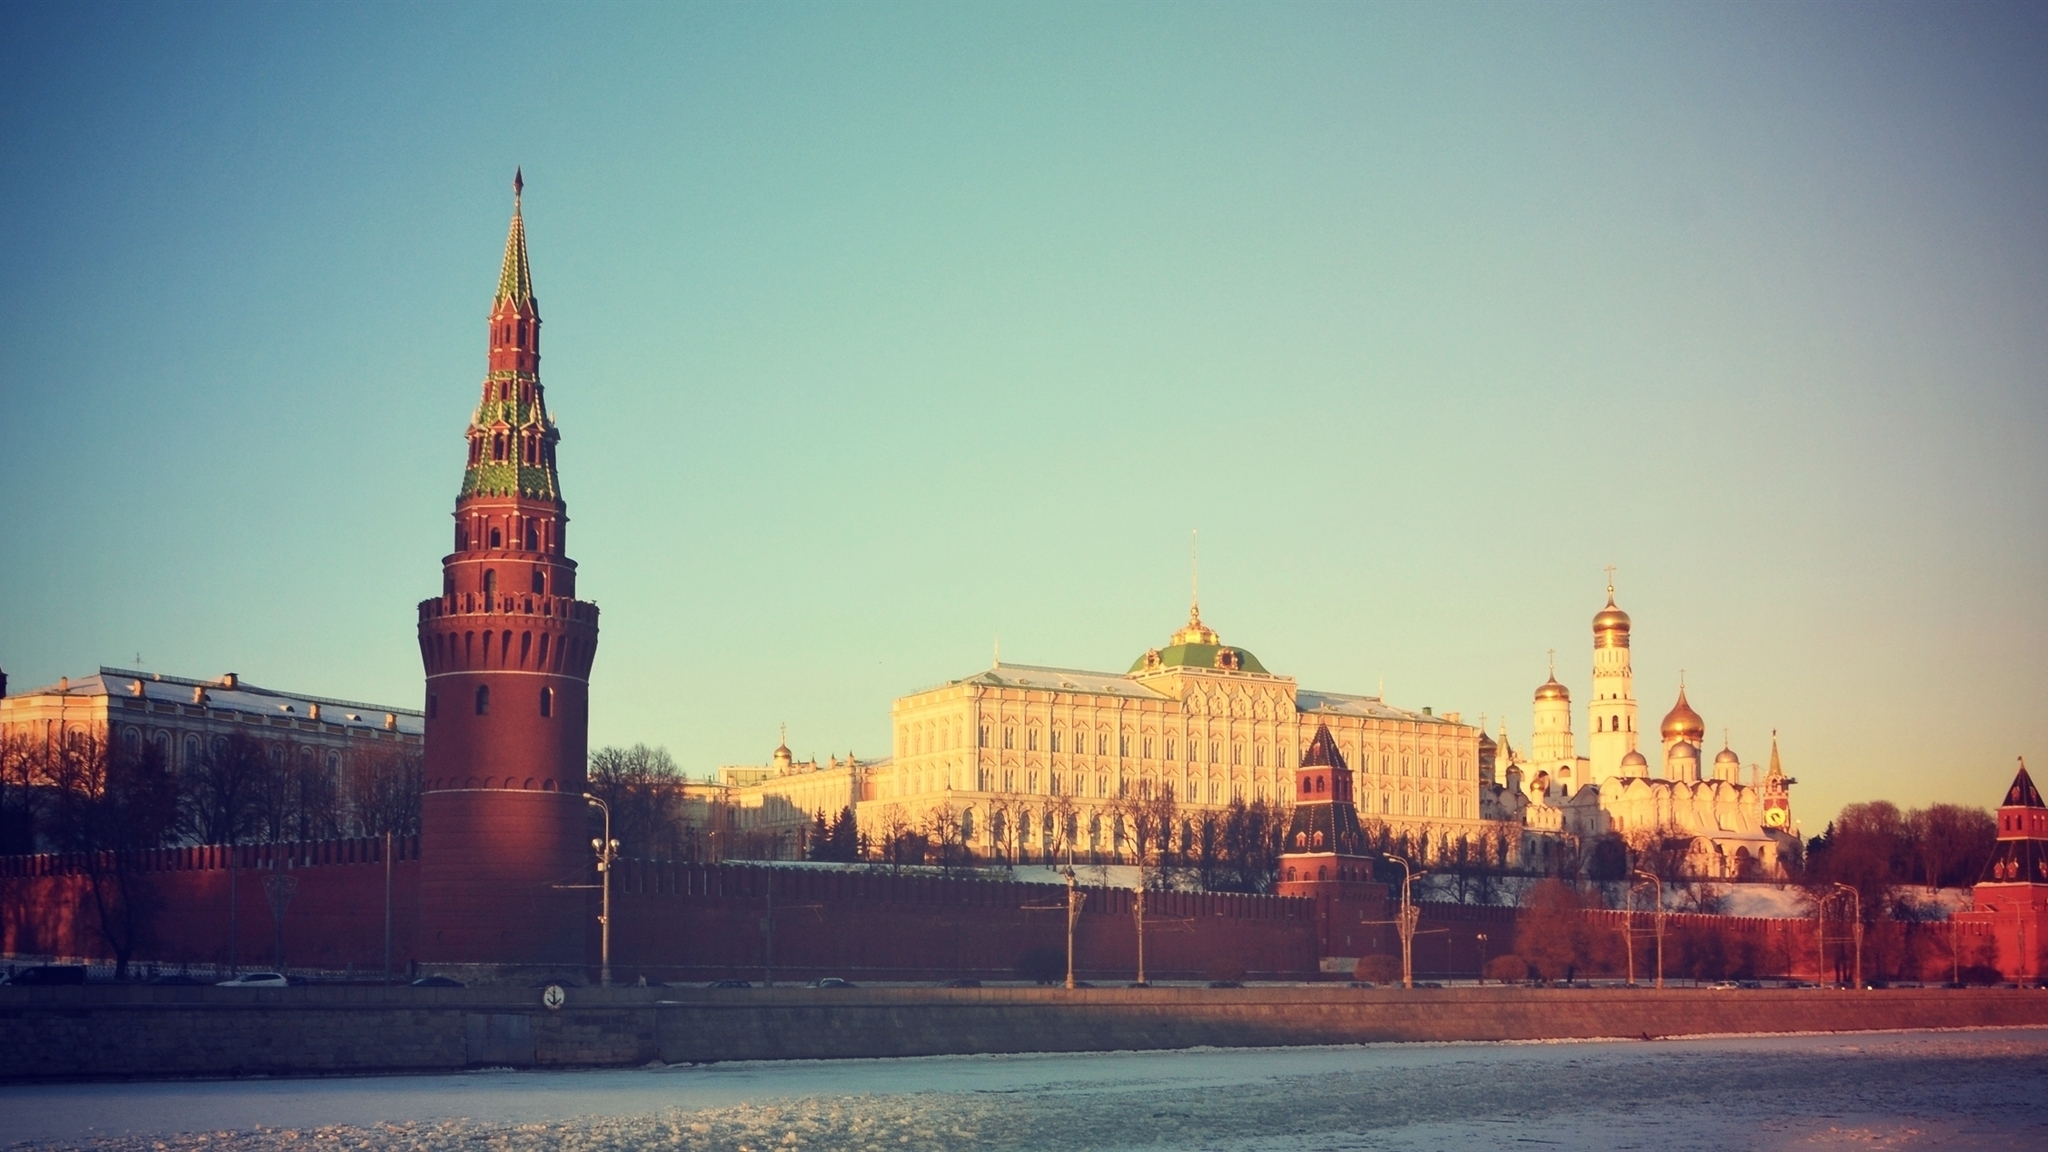 Картинка: Москва, Россия, Красная площадь, Кремль, достопримечательность